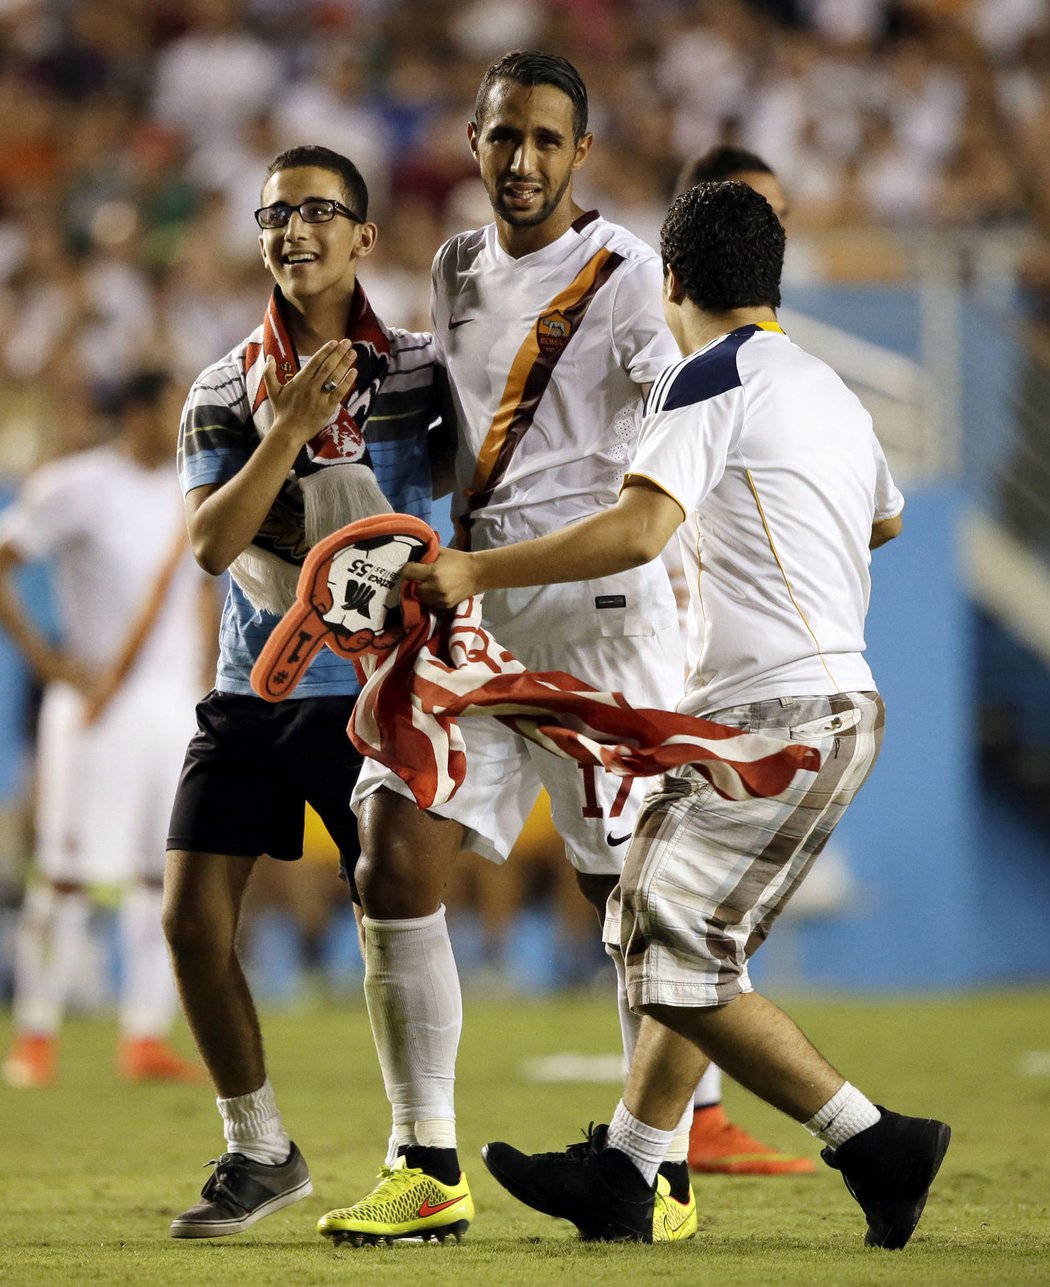 Na trávník vtrhli především fanoušci v dresech Realu Madrid, ušetření ovšem nebyli ani hráči AS Řím